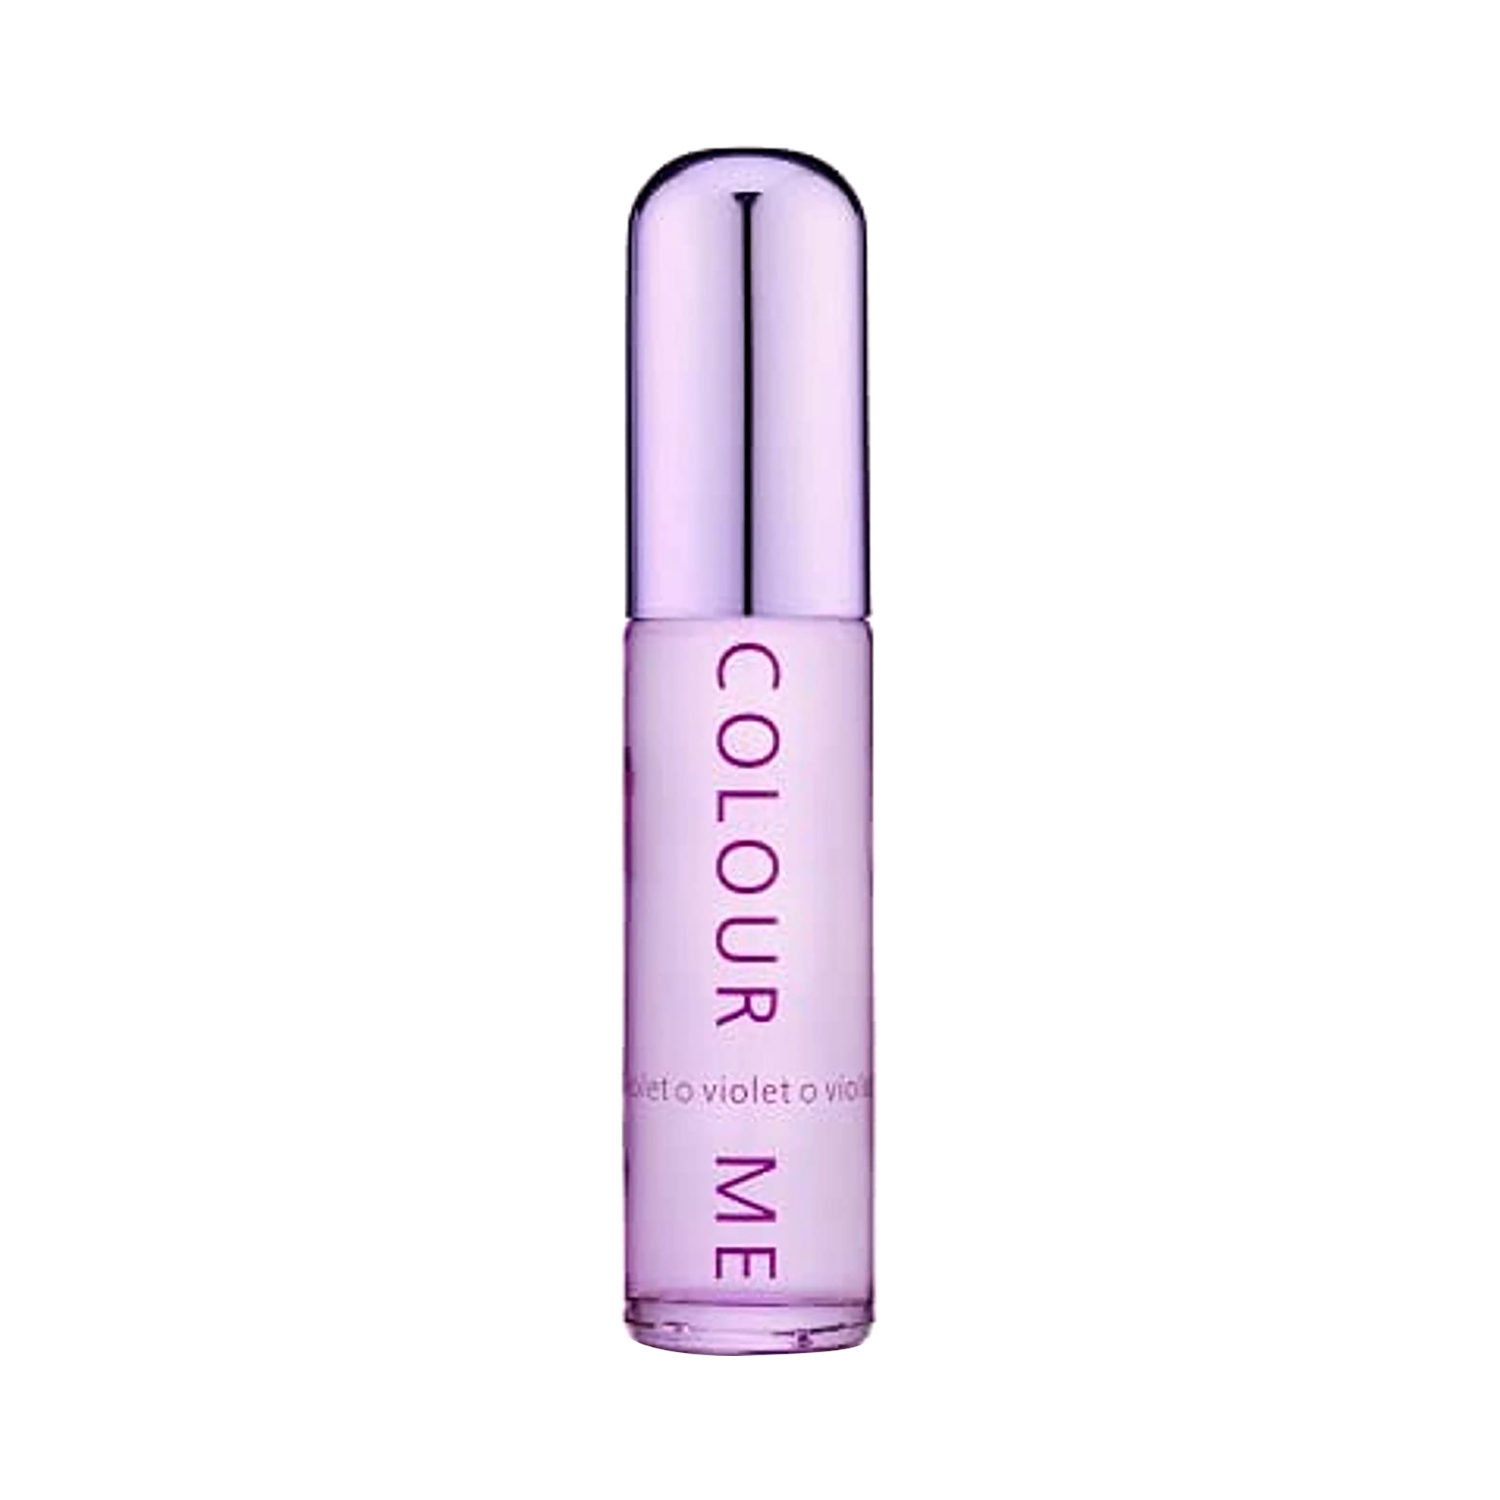 Colour Me | Colour Me Femme Violet Eau De Parfum (50ml)